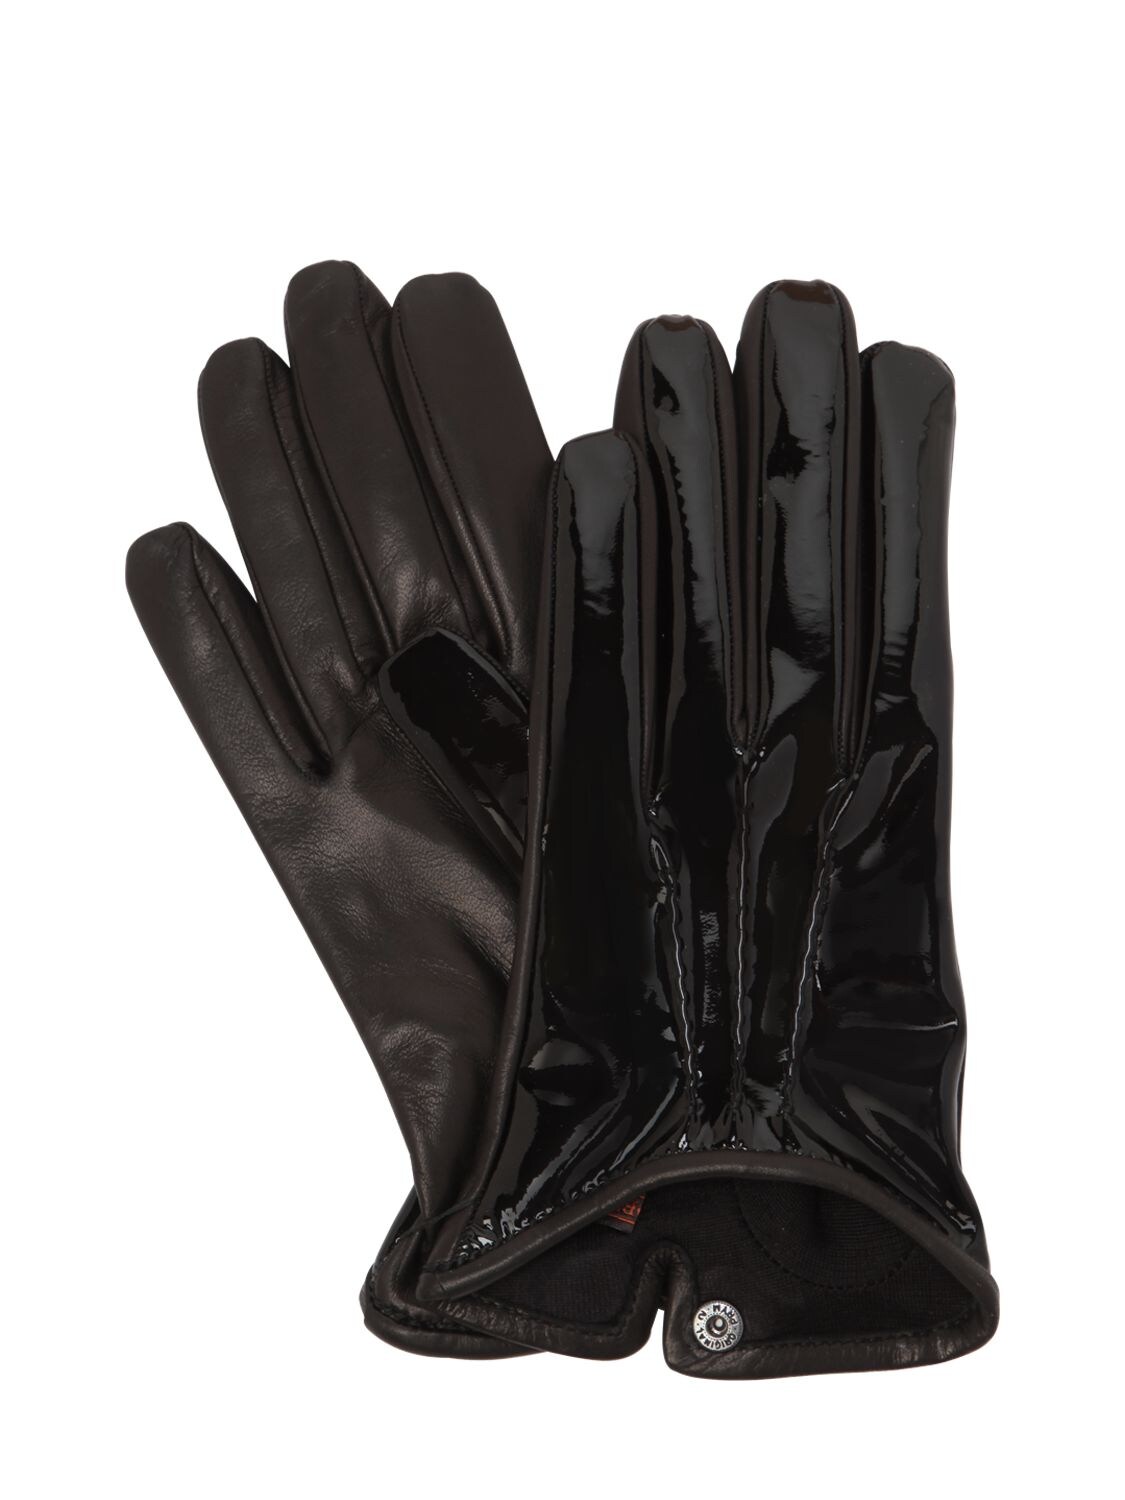 Mario Portolano Patent & Nappa Leather Gloves In Black